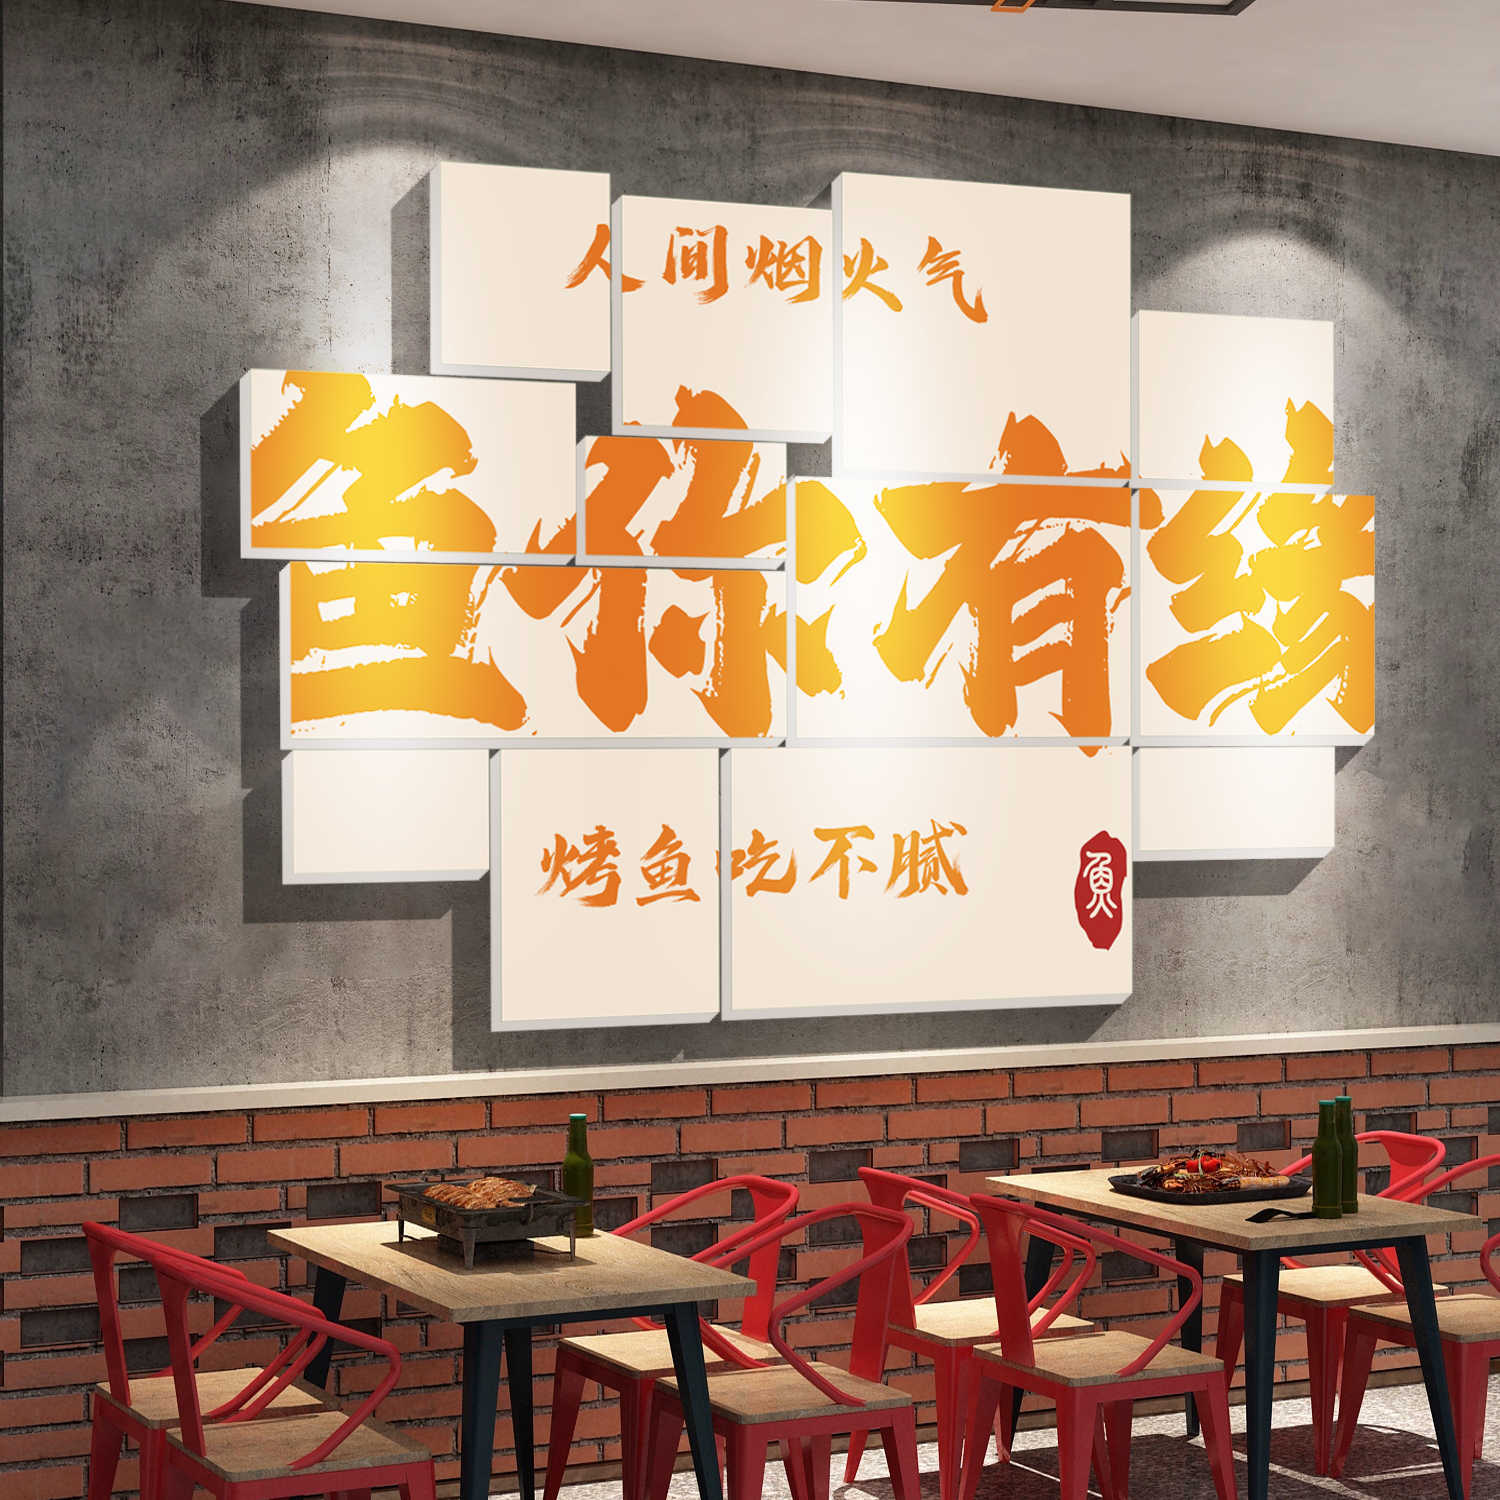 烤鱼店背景墙面自粘装饰贴纸包石锅鱼饭店复古壁画网红打卡拍照区